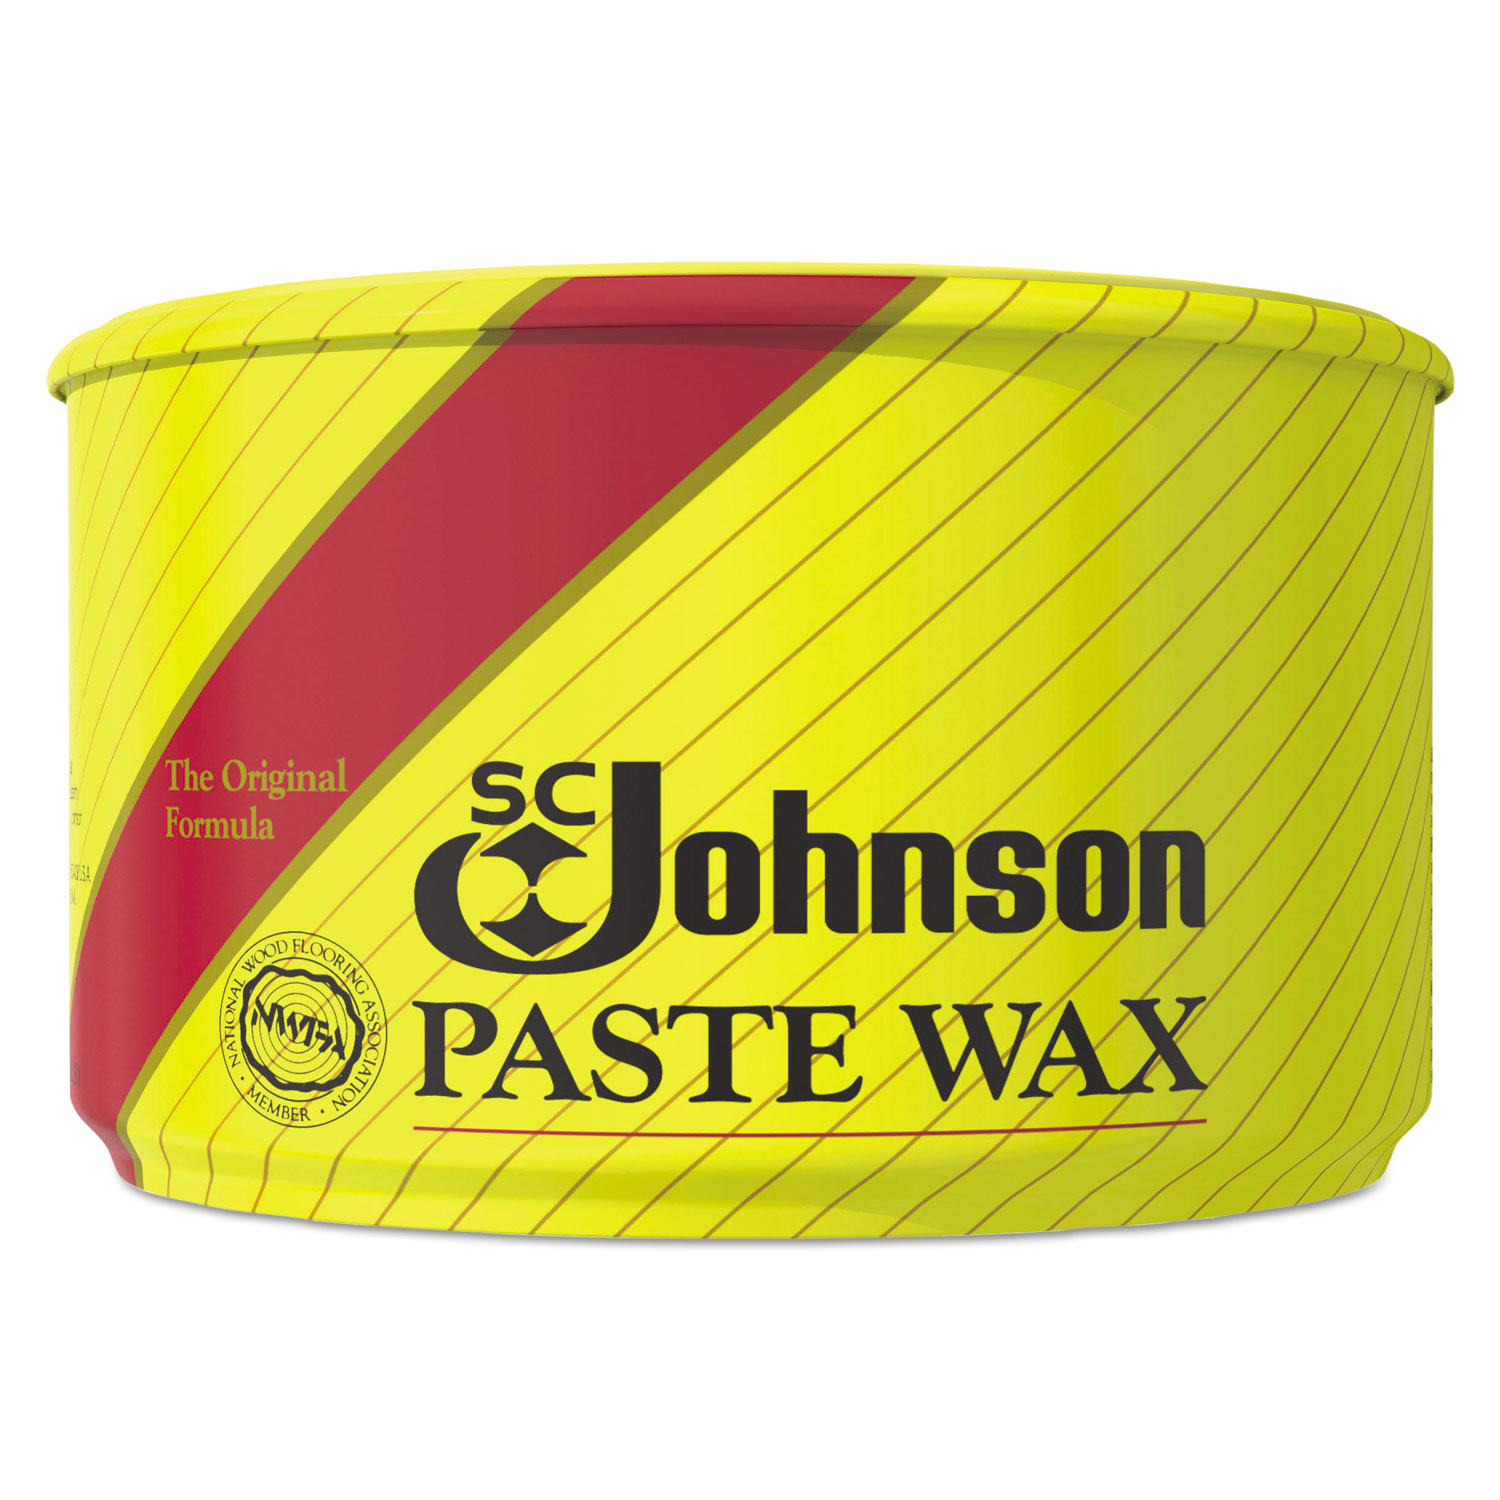  SC Johnson 203 Paste Wax, Multi-Purpose Floor Protector, 16oz Tub, 6/Carton (SJN000203) 